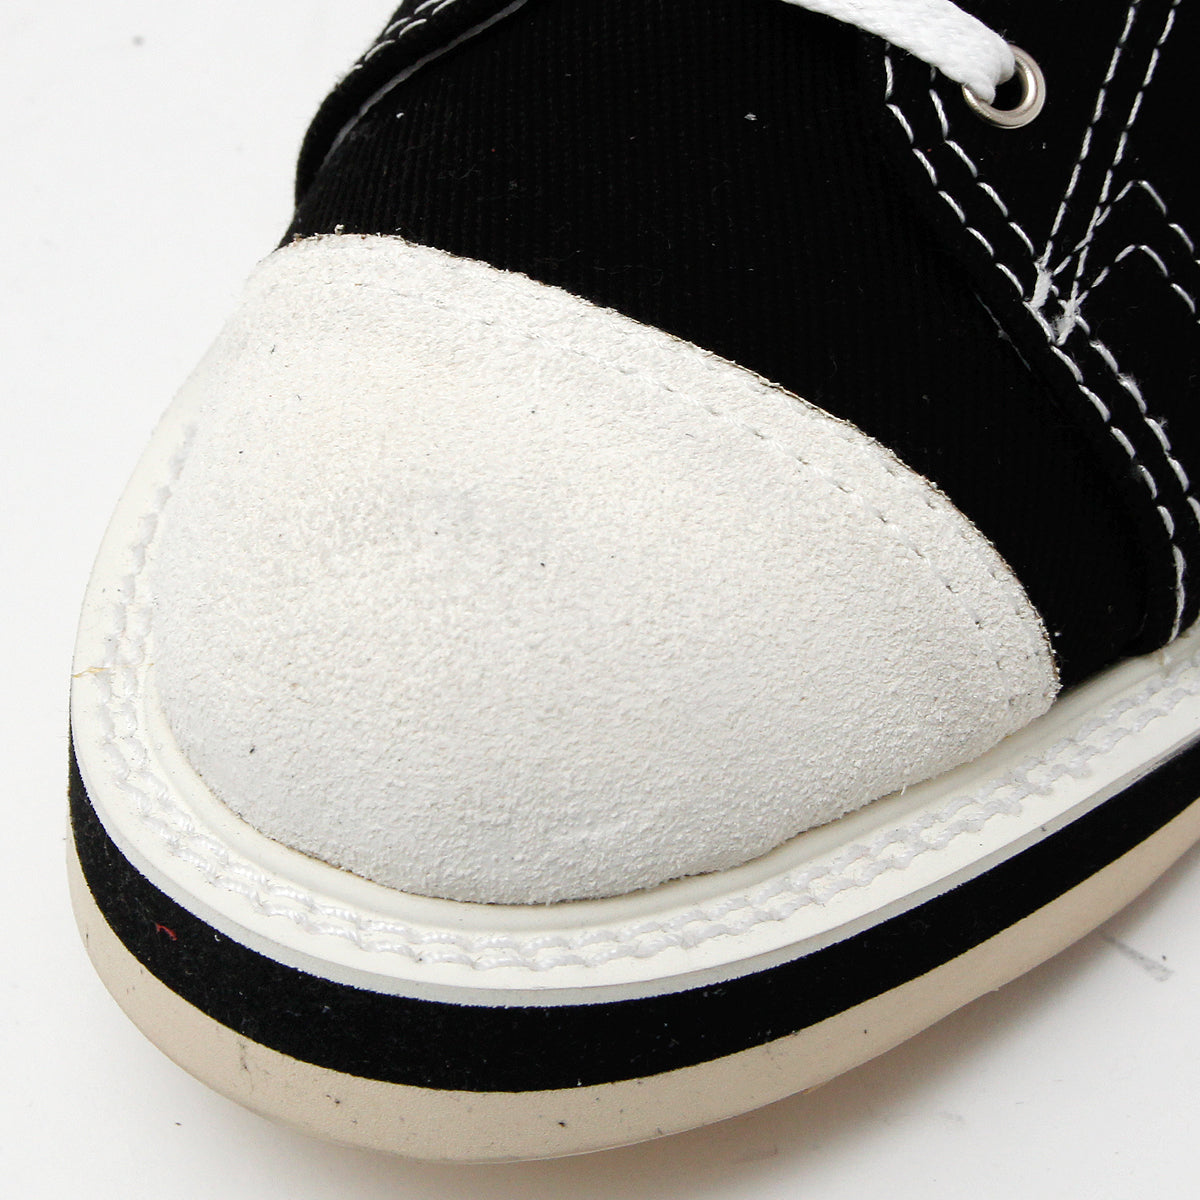 Sneaker Boots（Hi-Cut） / BLACK